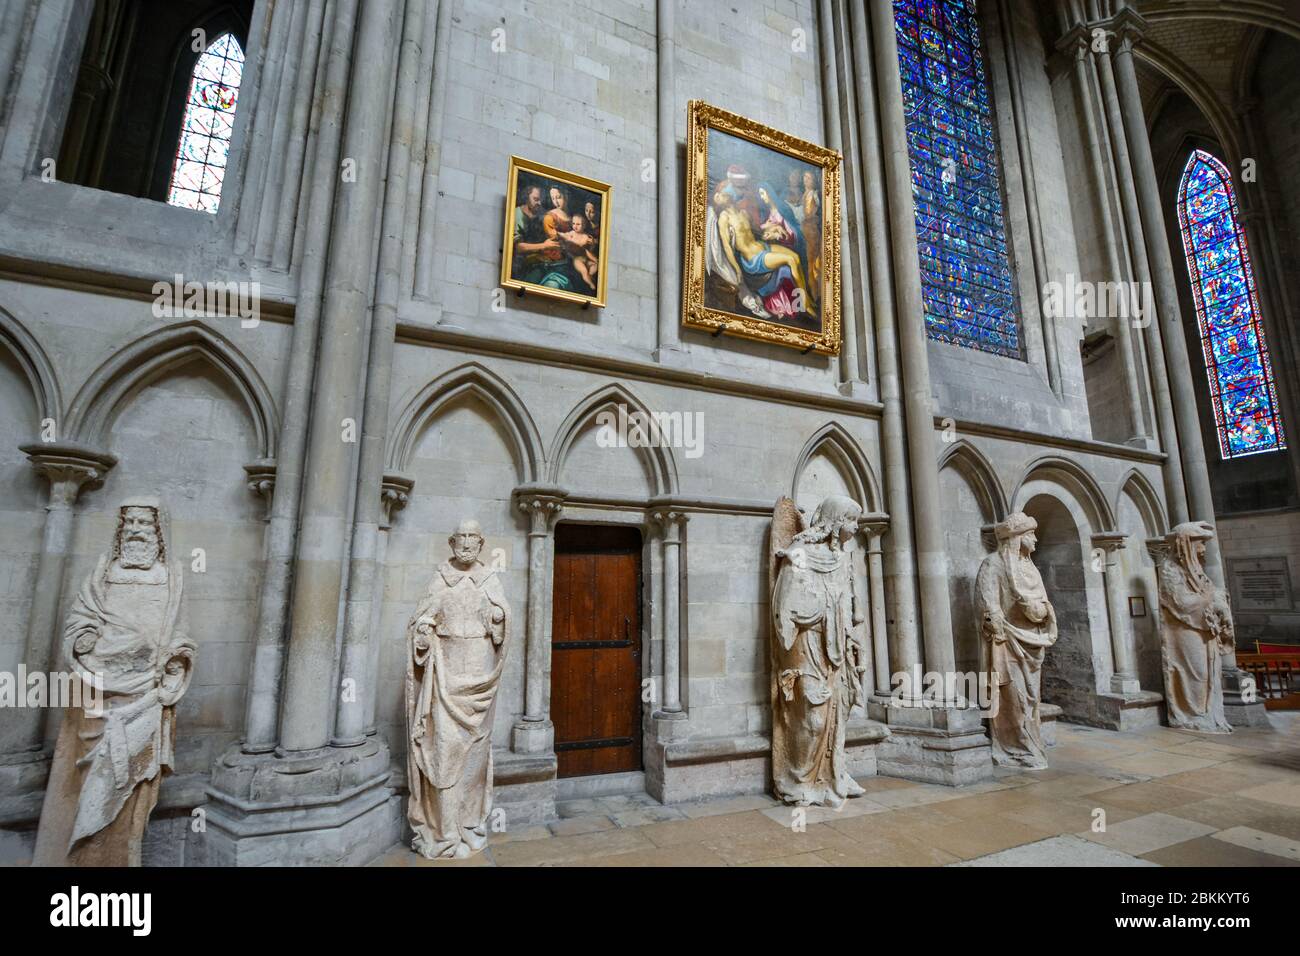 El deambulatorio del interior de la Catedral de Rouen en Rouen, Francia con vitrales, estatuas y pinturas del Renacimiento Foto de stock